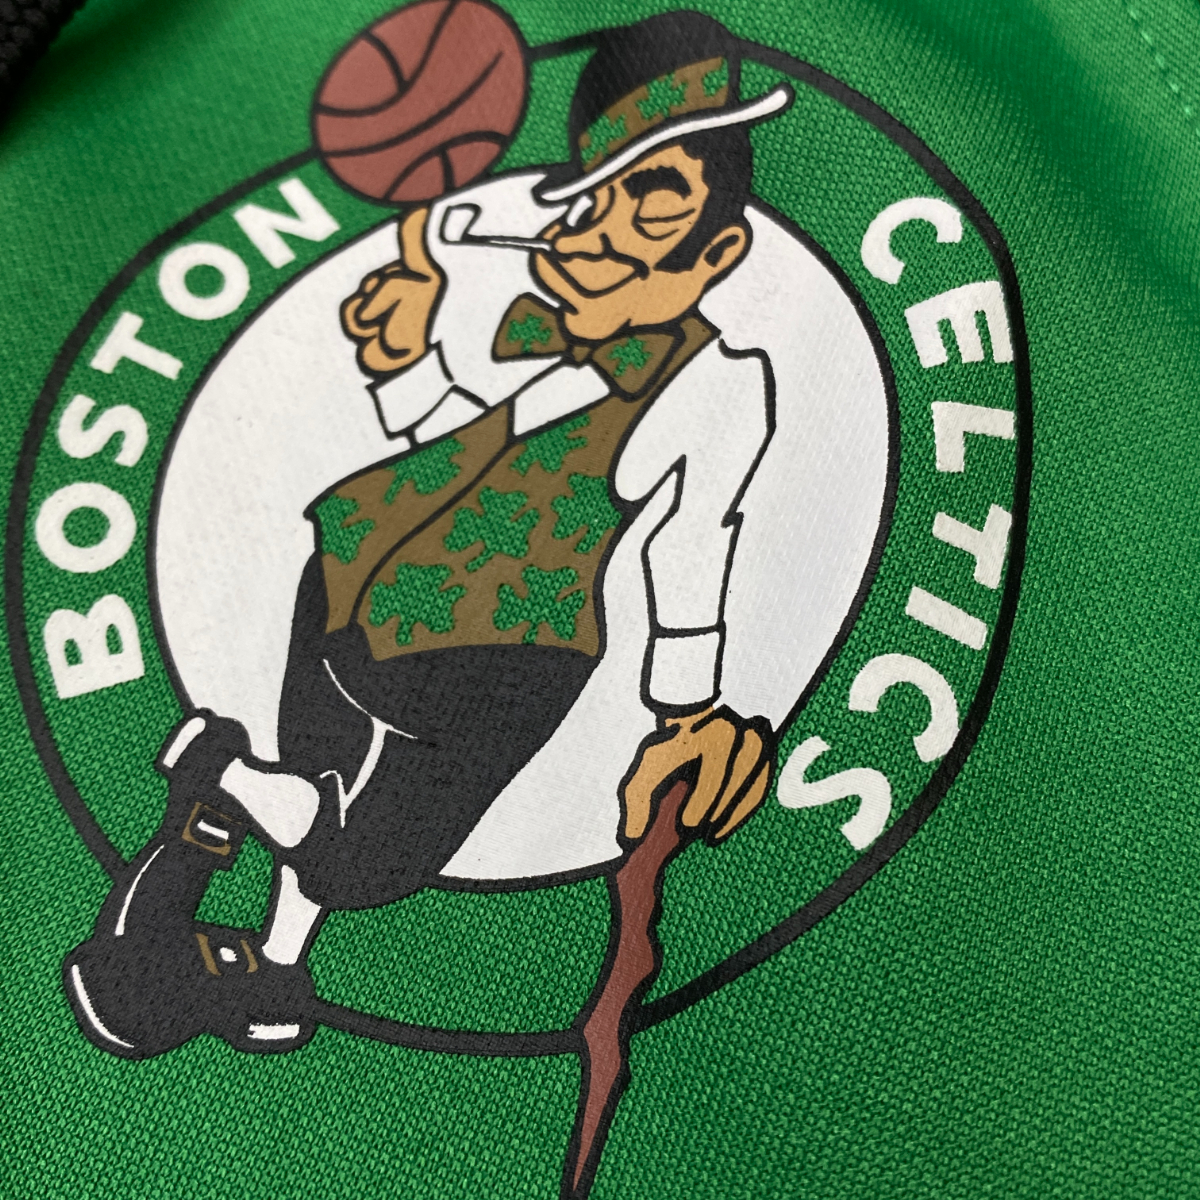 USA正規品 【M】 NBA公式ライセンスアイテム UNK ボストン セルティックス Boston Celtics ジップアップ フリースパーカー バスケット_画像2